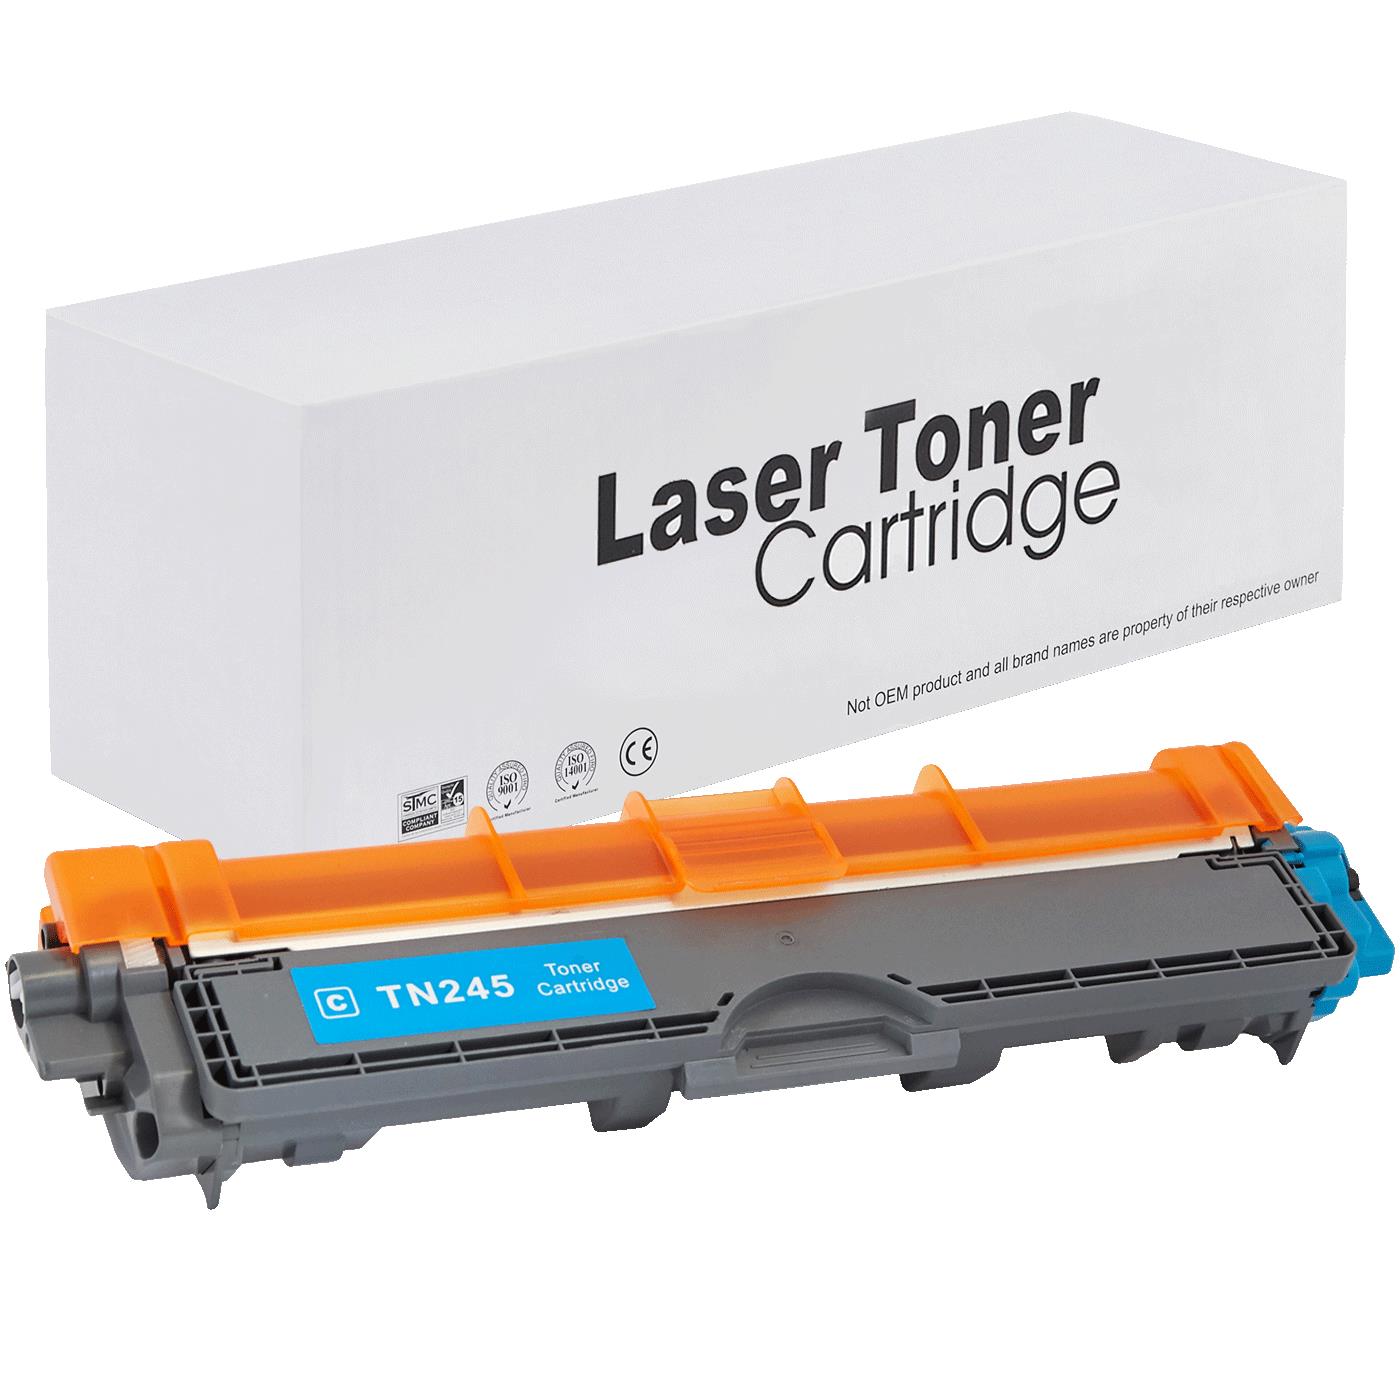 съвместима тонер касета за принтери и печатащи устройства на Brother MFC-9330 CDW Toner BR-245C | TN245C / TN241C. Ниски цени, прецизно изпълнение, високо качество.